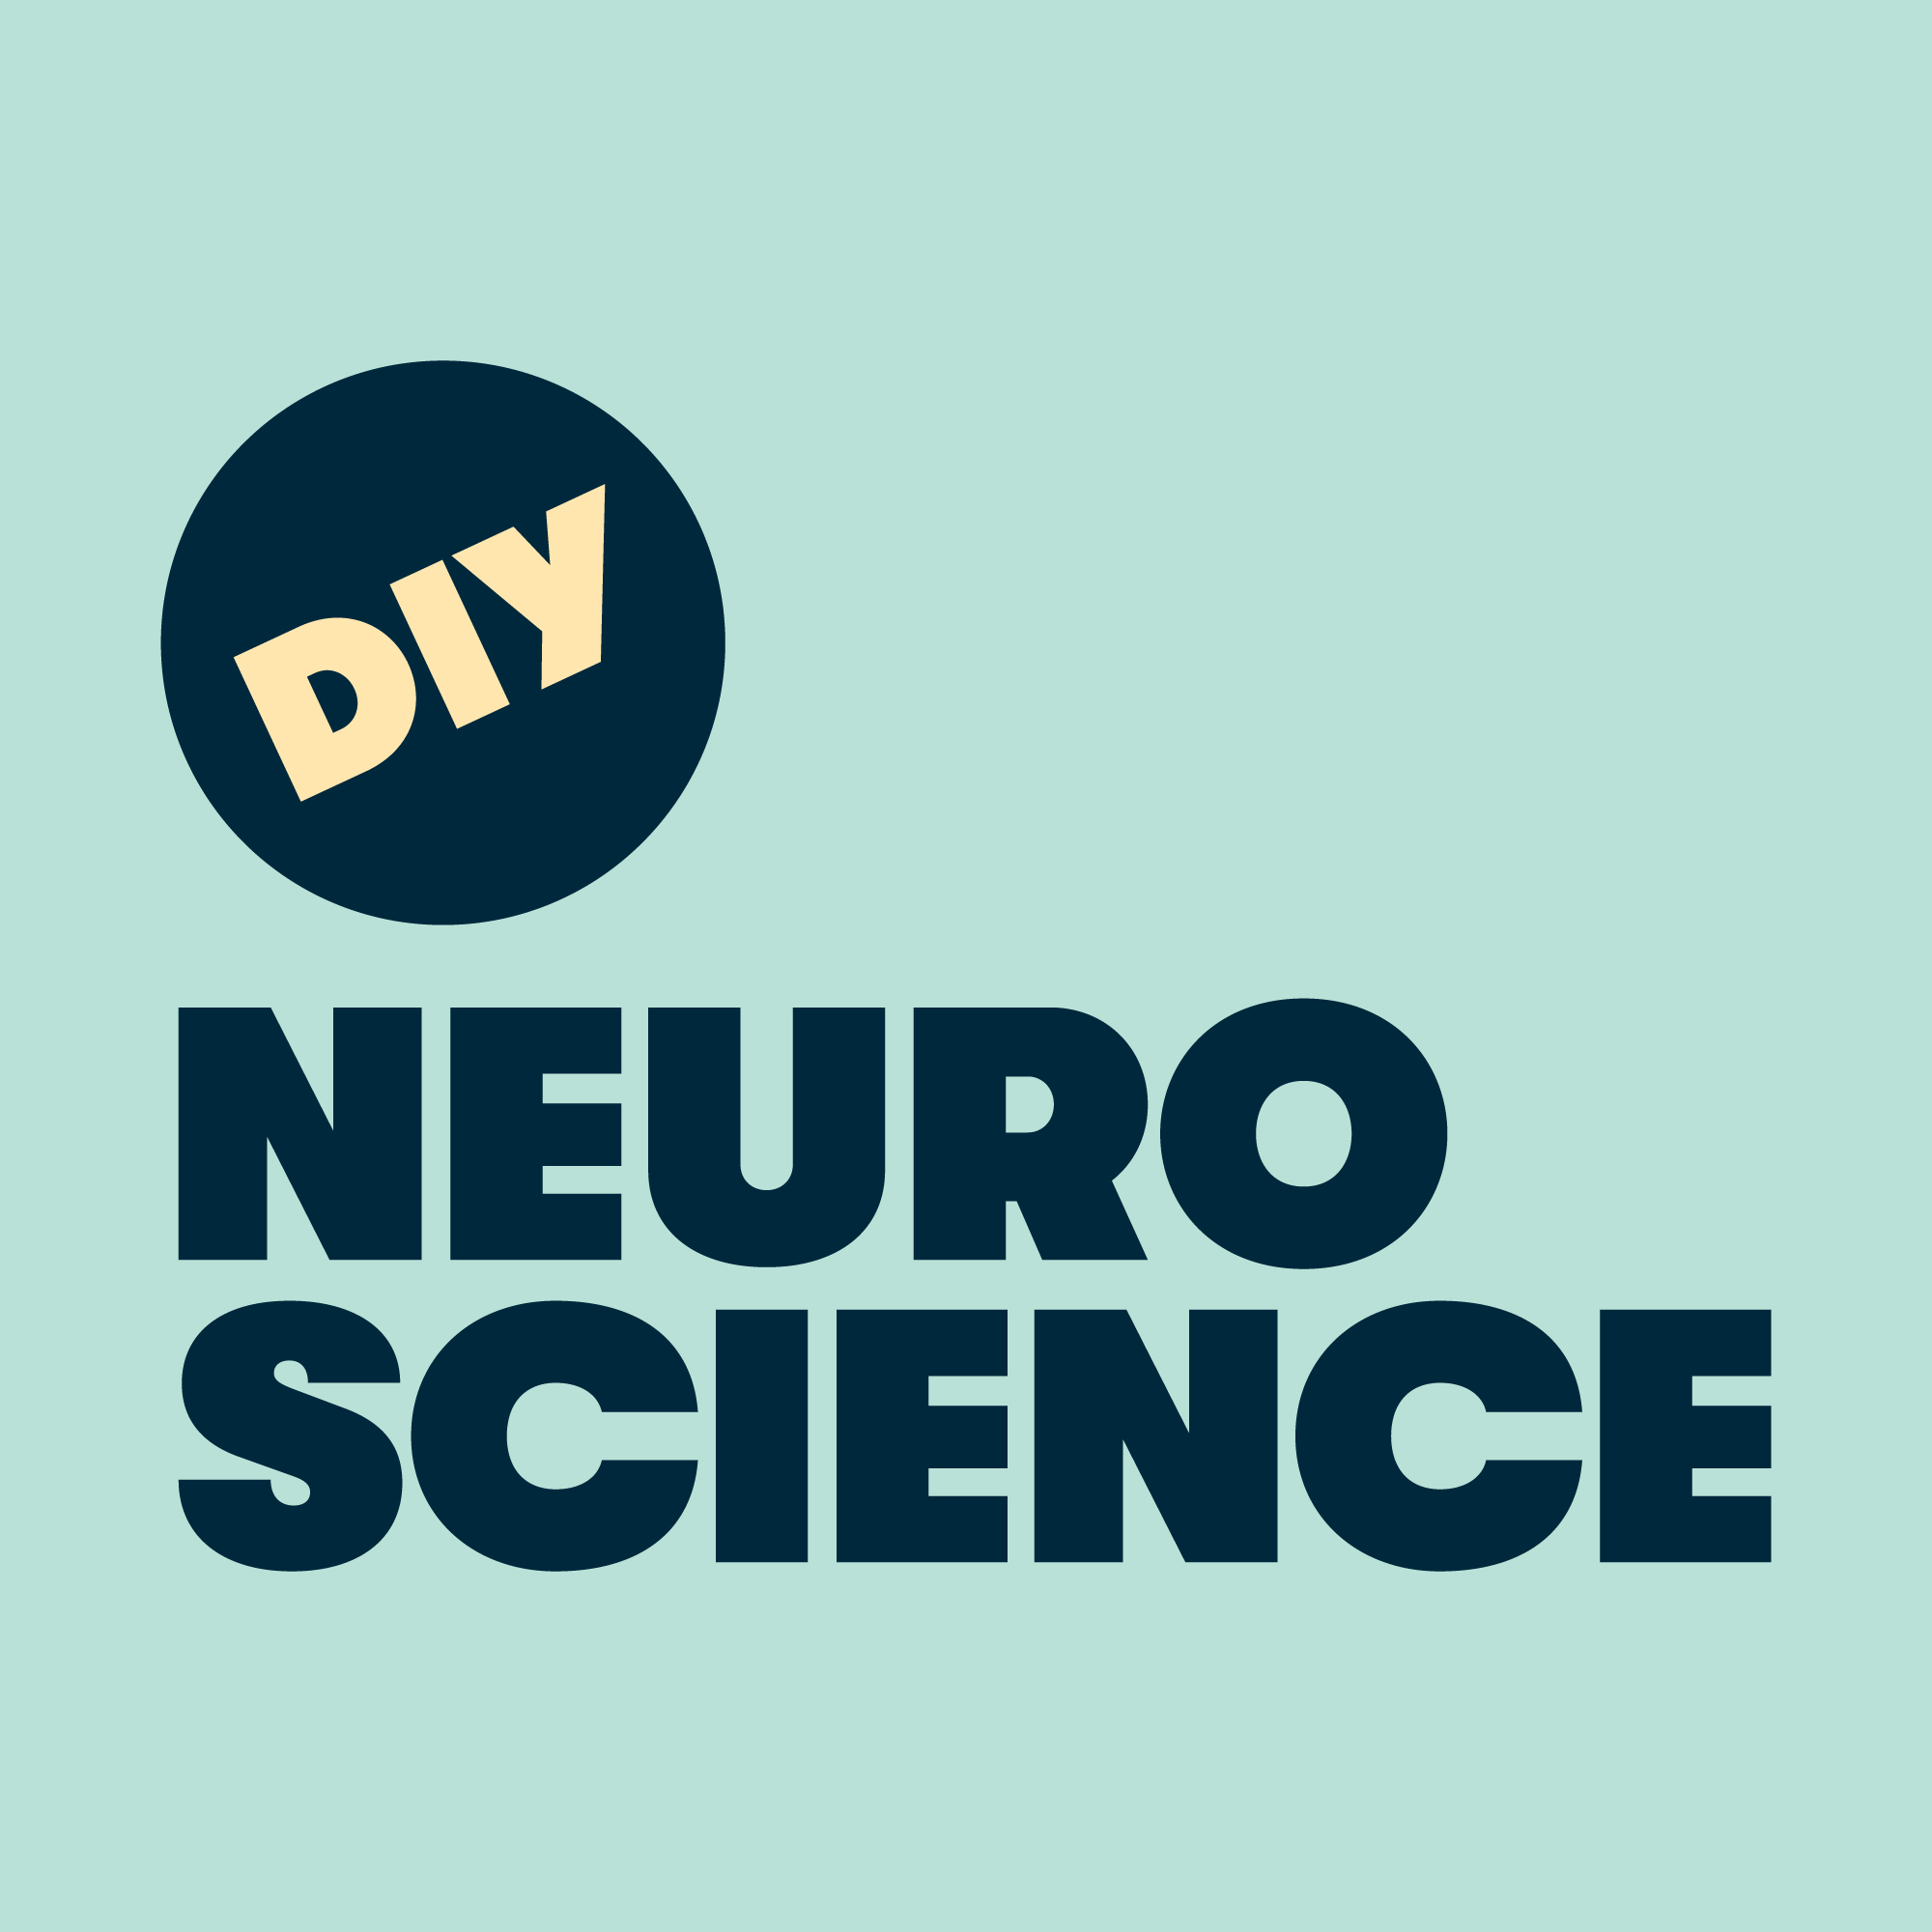 DIY Neuroscience